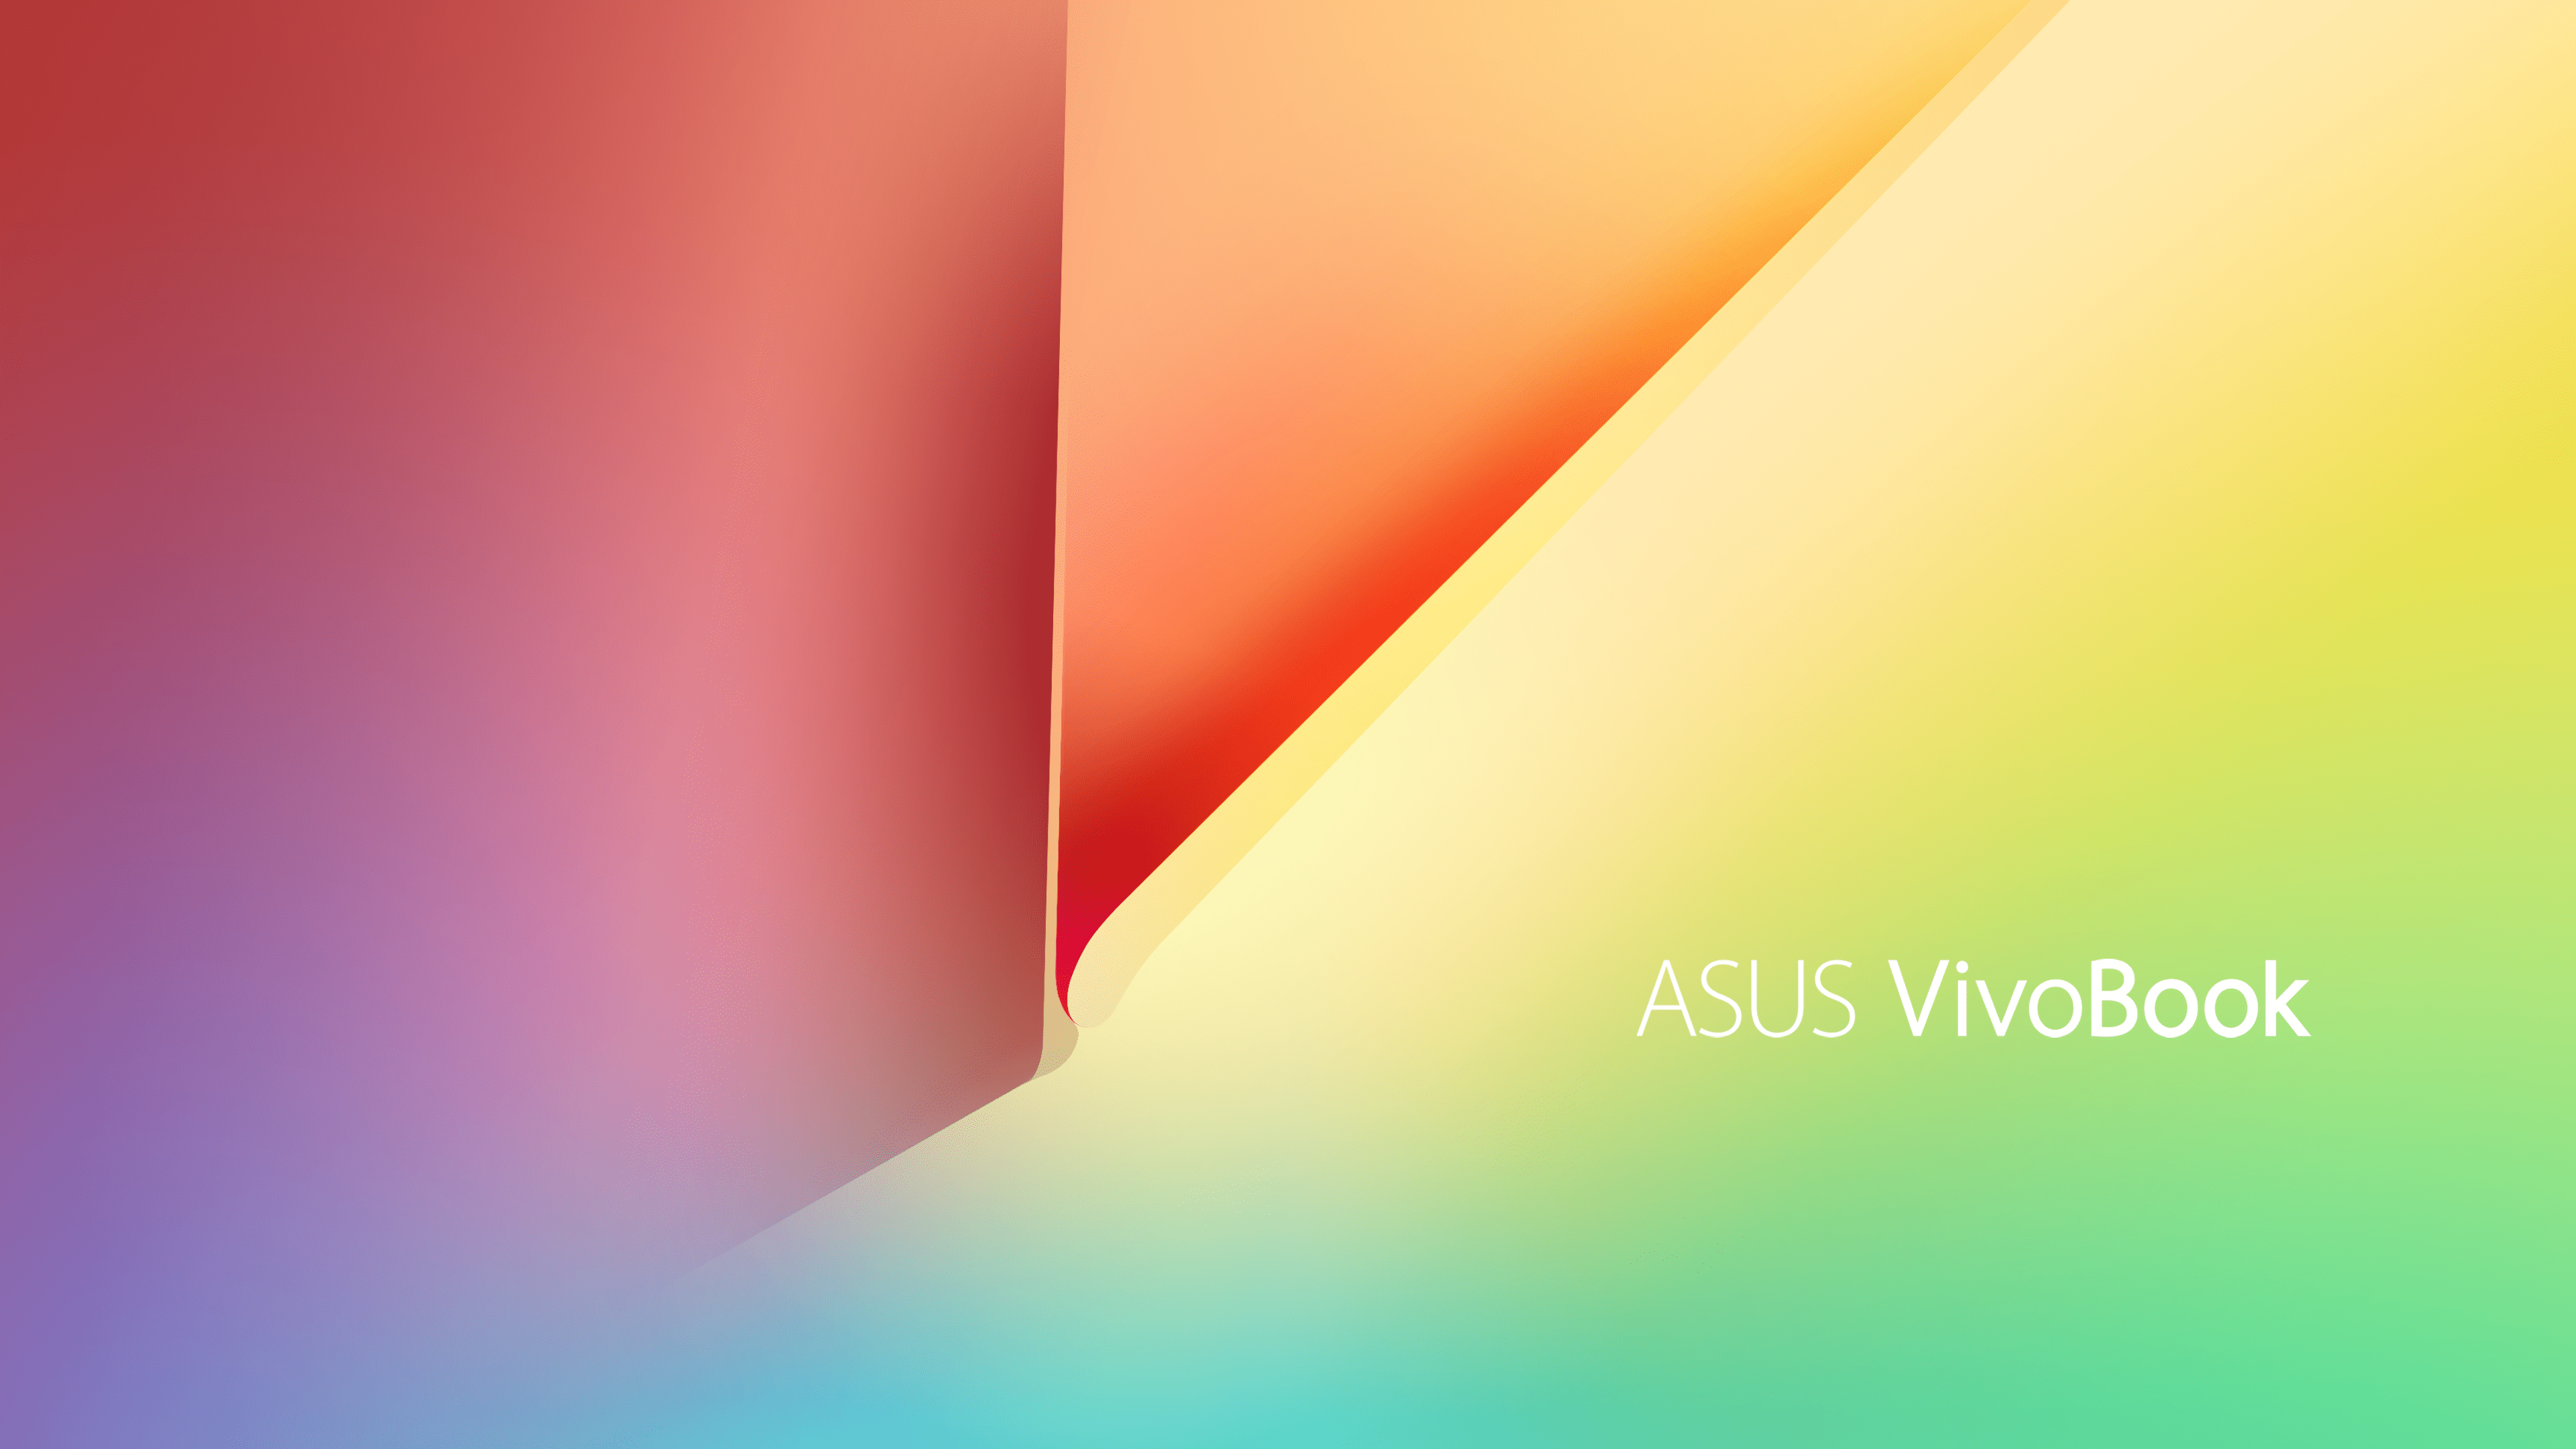 Mách bạn 92+ hình nền asus vivobook hay nhất: hình nền Asus Vivobook Bạn đang cần tìm các hình nền đẹp cho chiếc laptop ASUS Vivobook của mình? Đừng lo, hãy nhấp chuột vào hình ảnh để khám phá 92+ mẫu hình nền độc đáo, phù hợp với nhiều phong cách từ cổ điển đến hiện đại. Bạn sẽ tìm thấy bức ảnh ưng ý cho chiếc laptop của mình thật dễ dàng và thú vị.